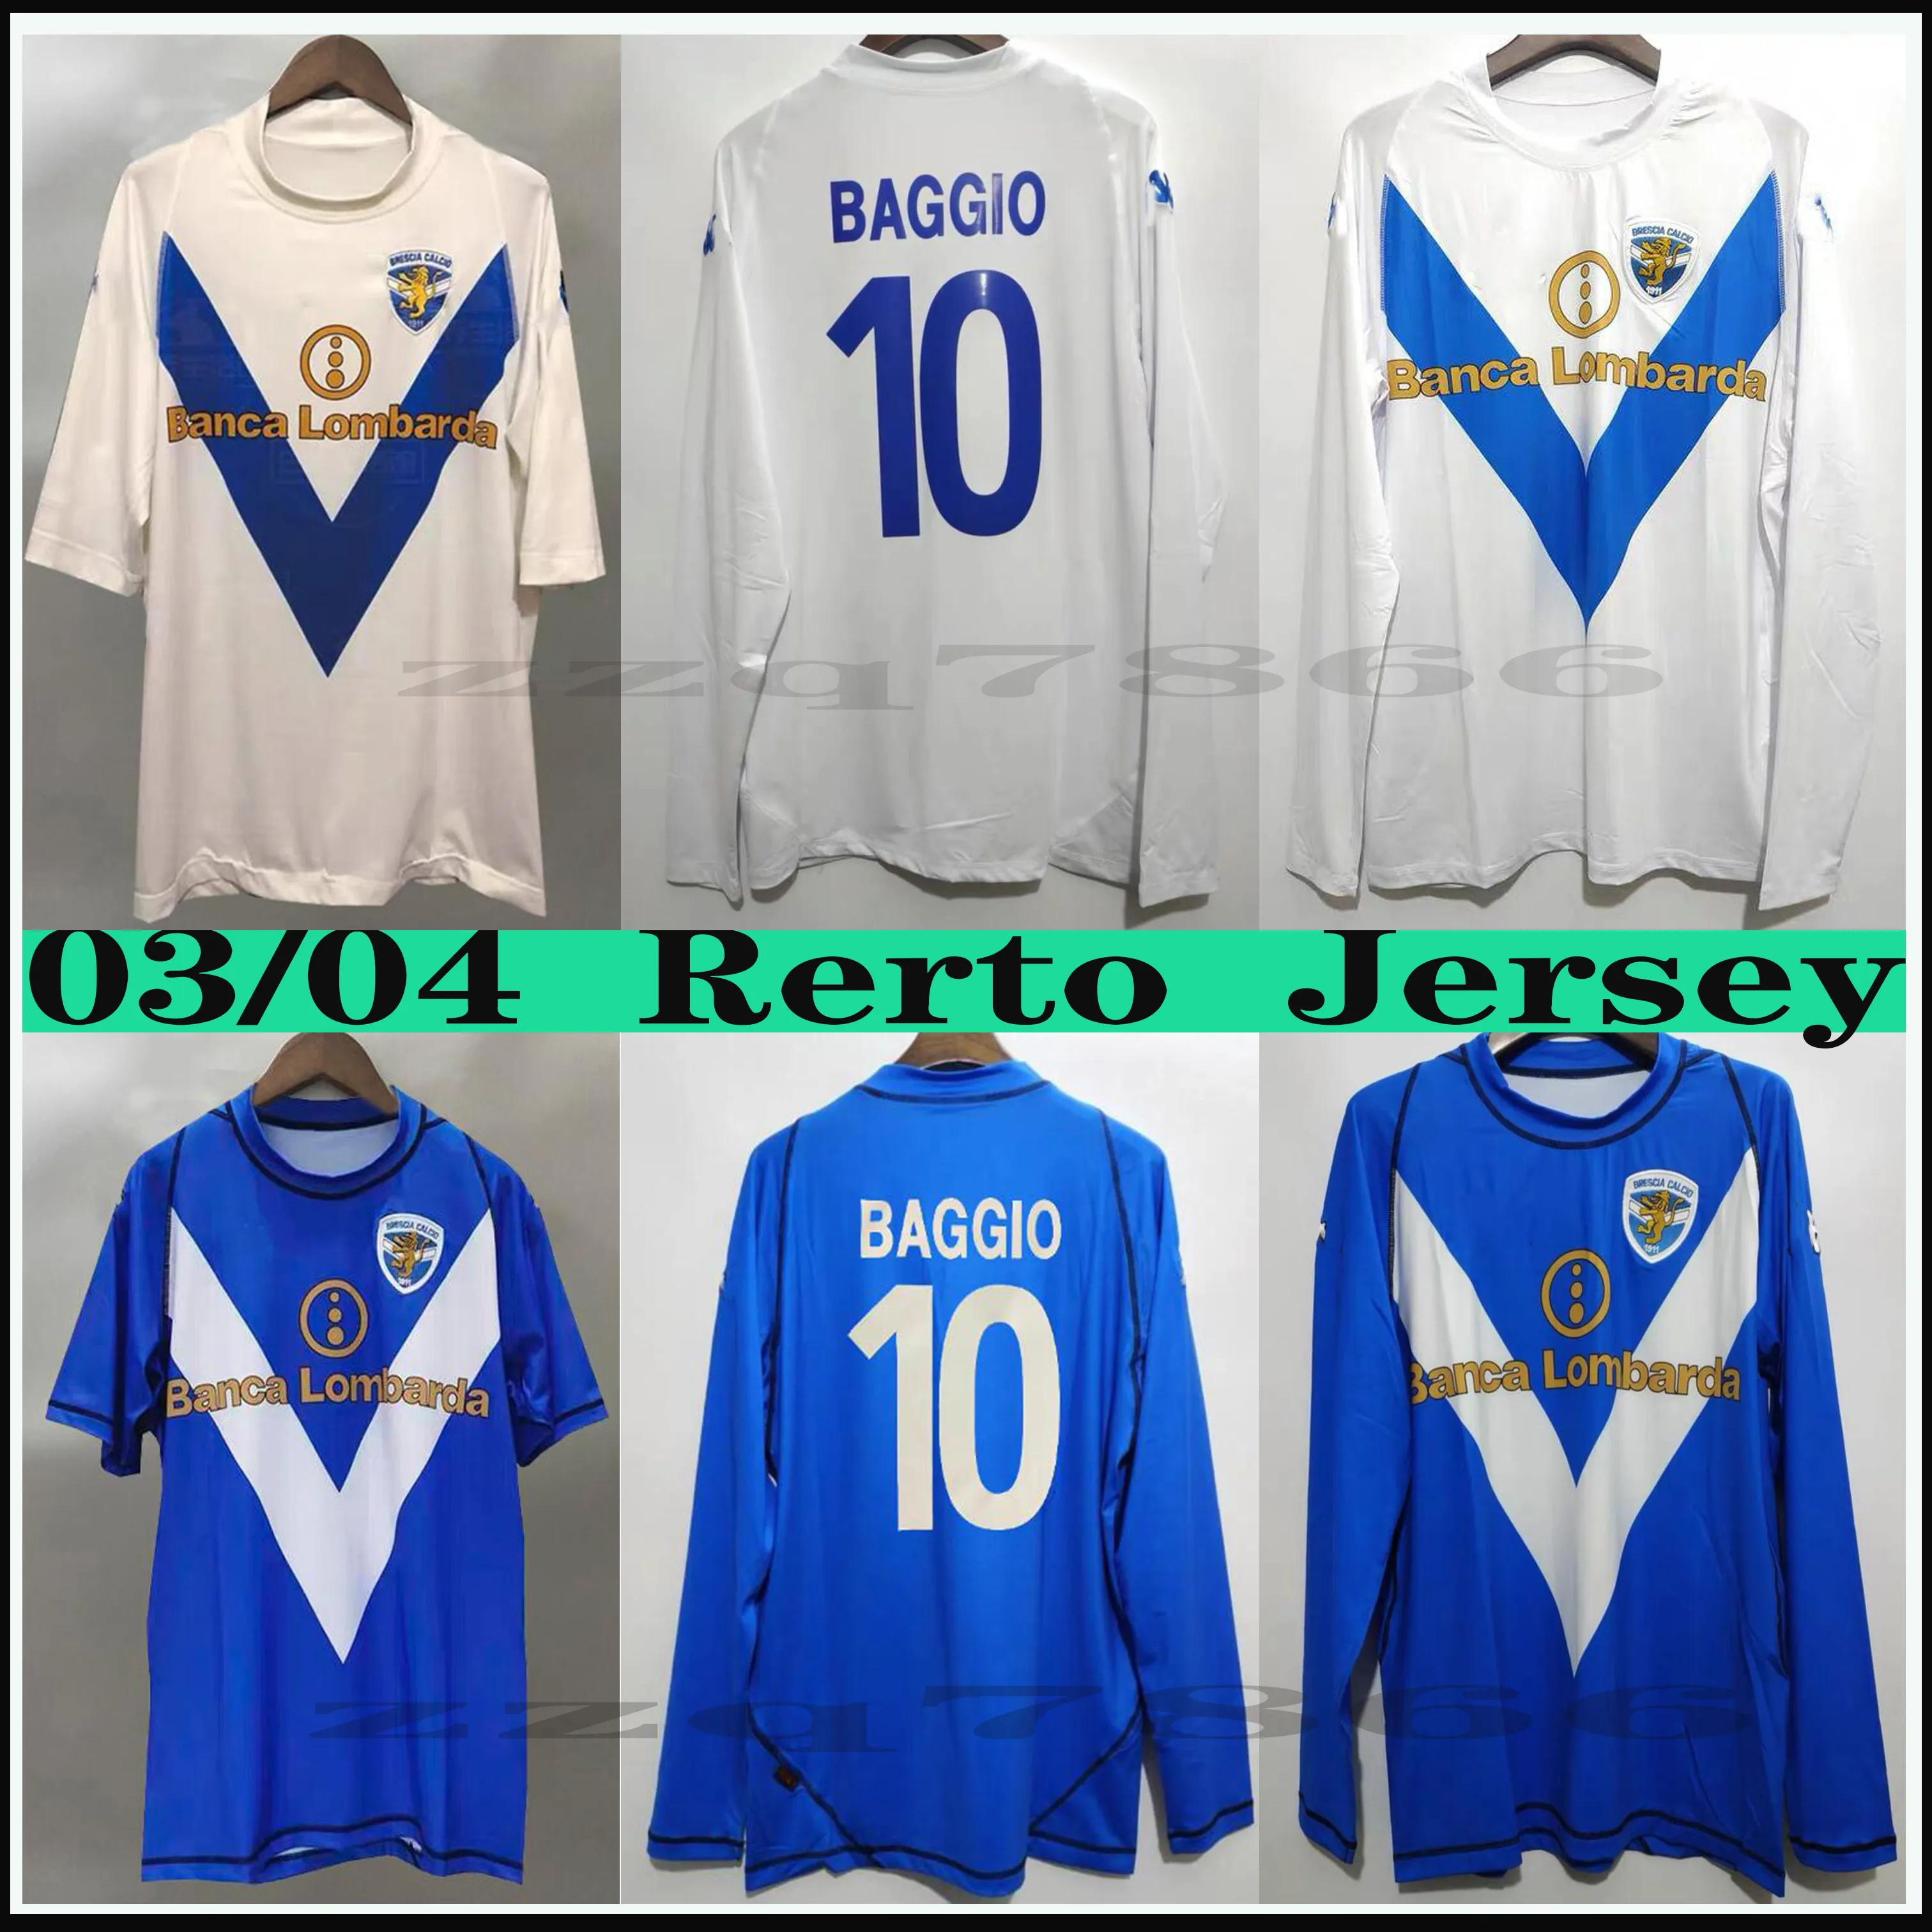 2003 2004 Brescia Baggio Pirlo Camiseta de fútbol retro Clásico Vintage Calcio F.Aye Donnarumma Spalek Camisetas de fútbol cortas de manga larga